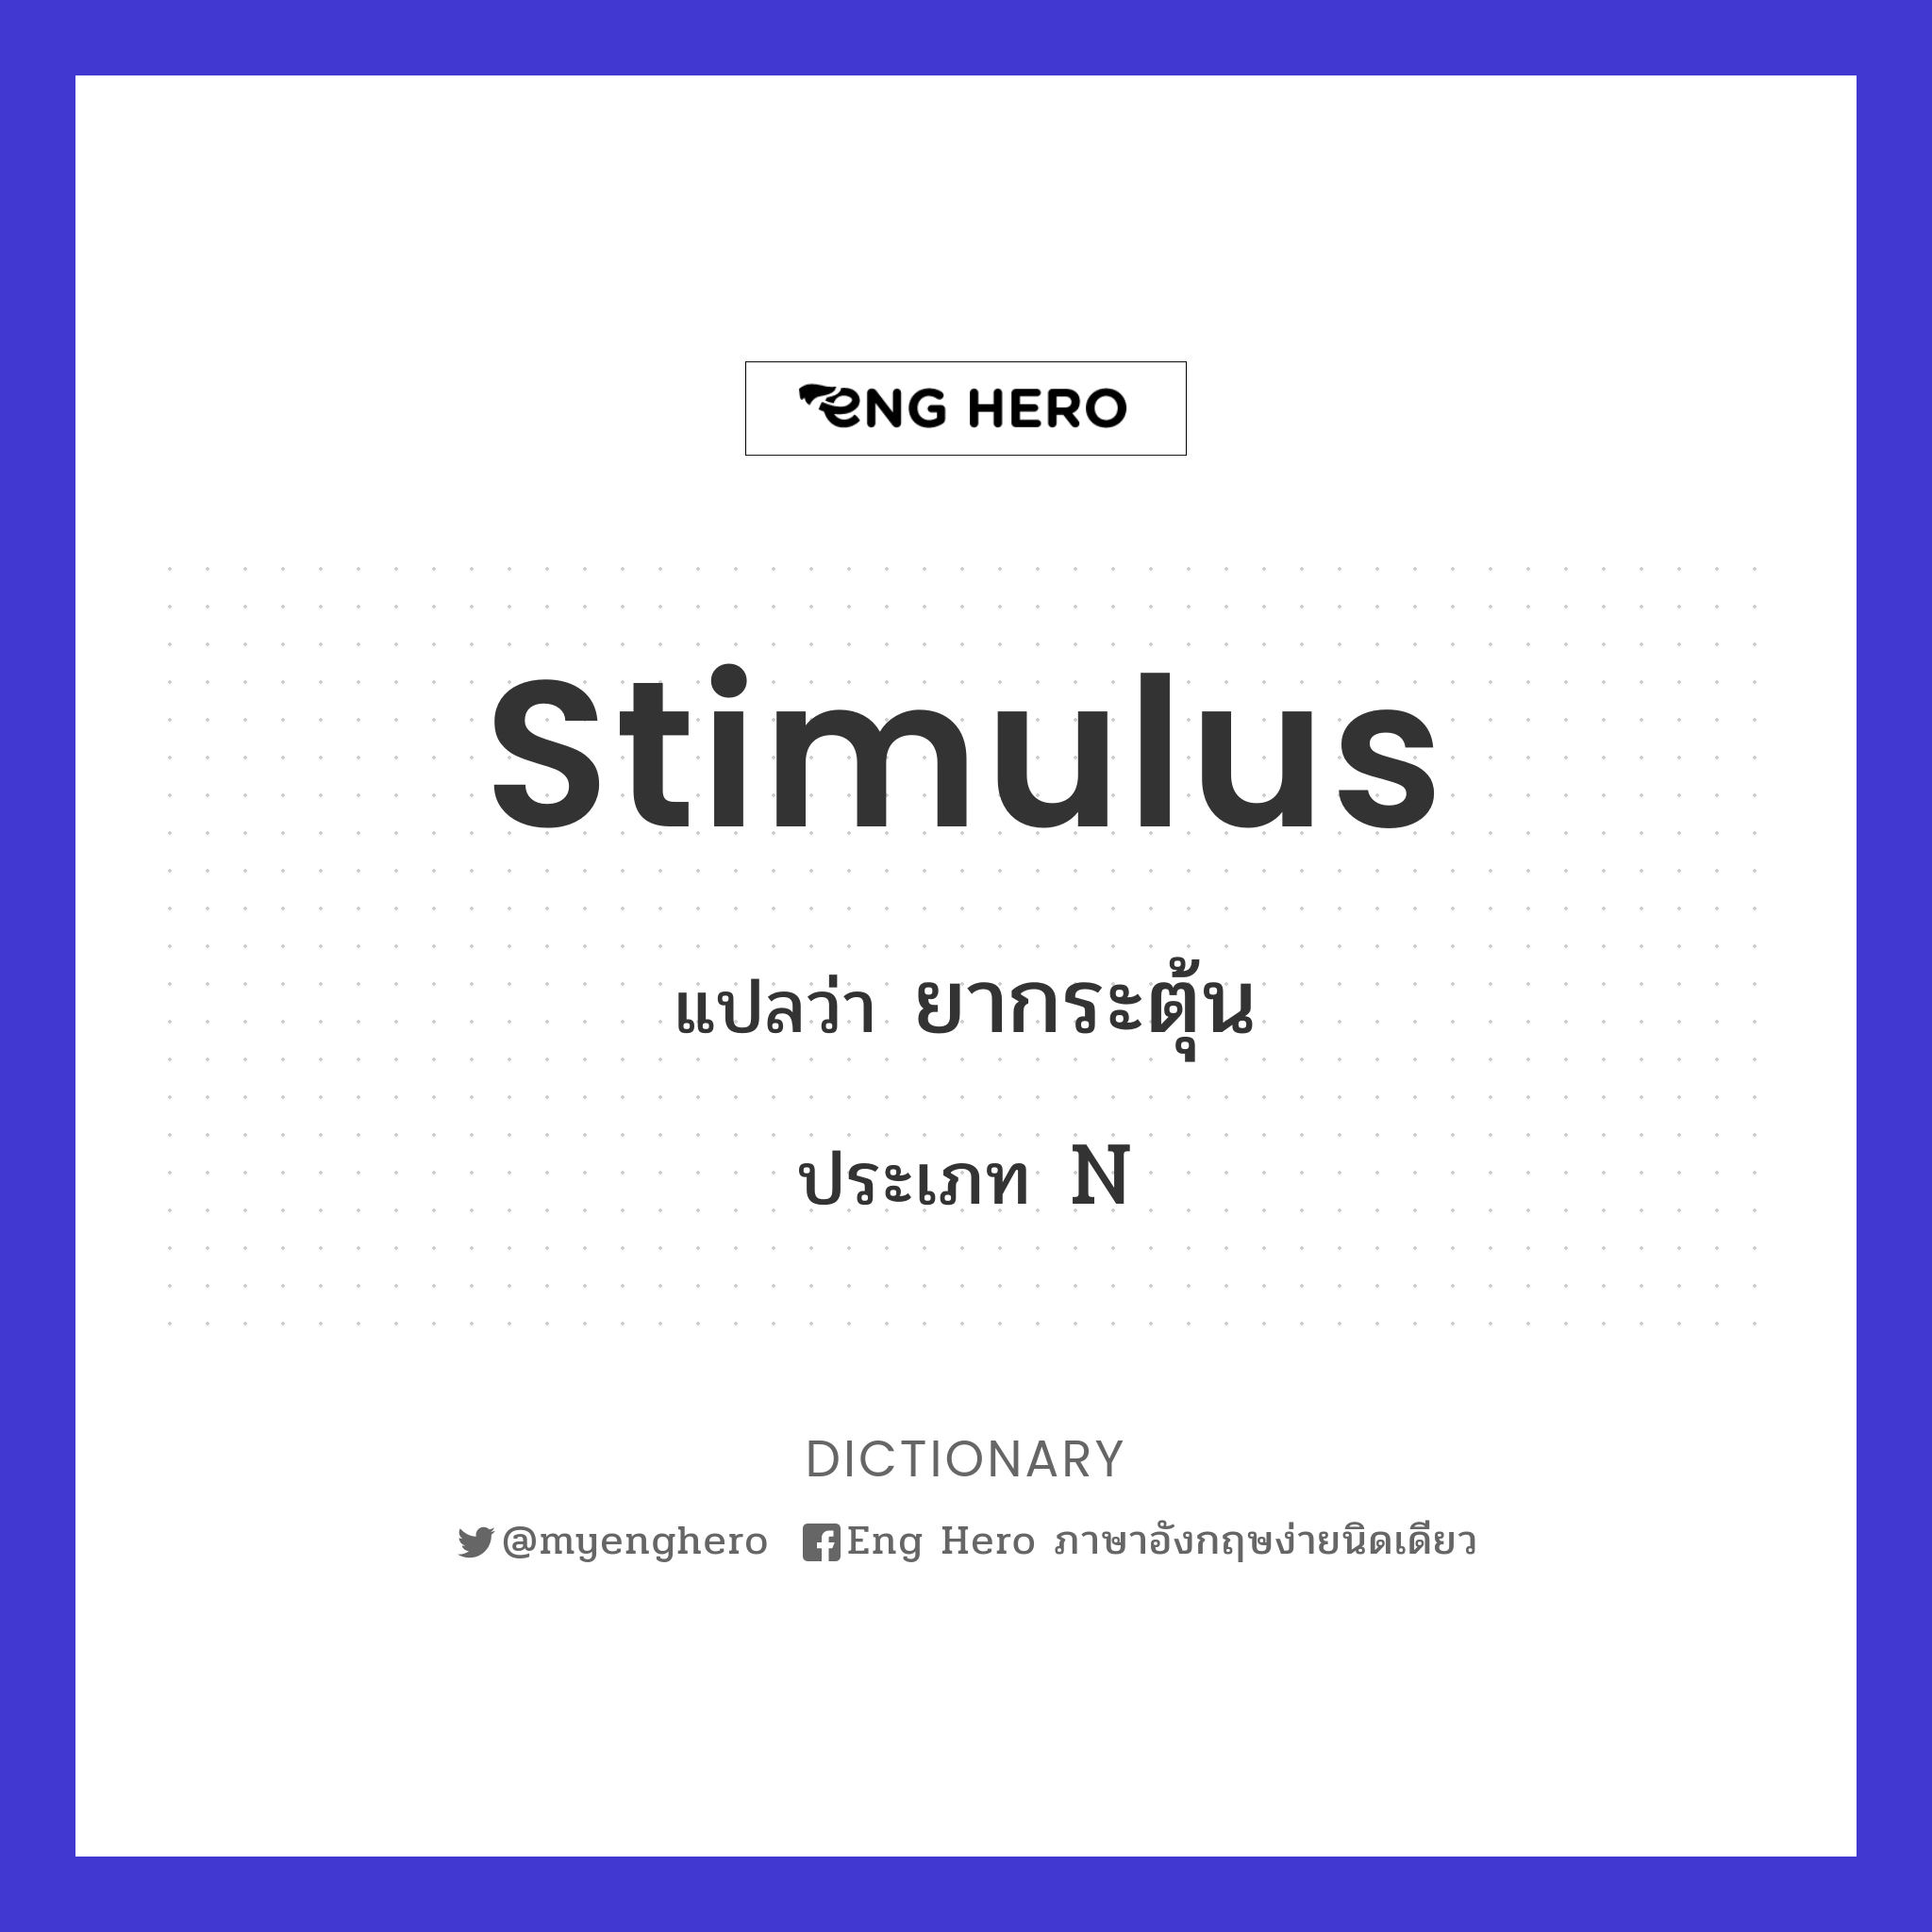 stimulus